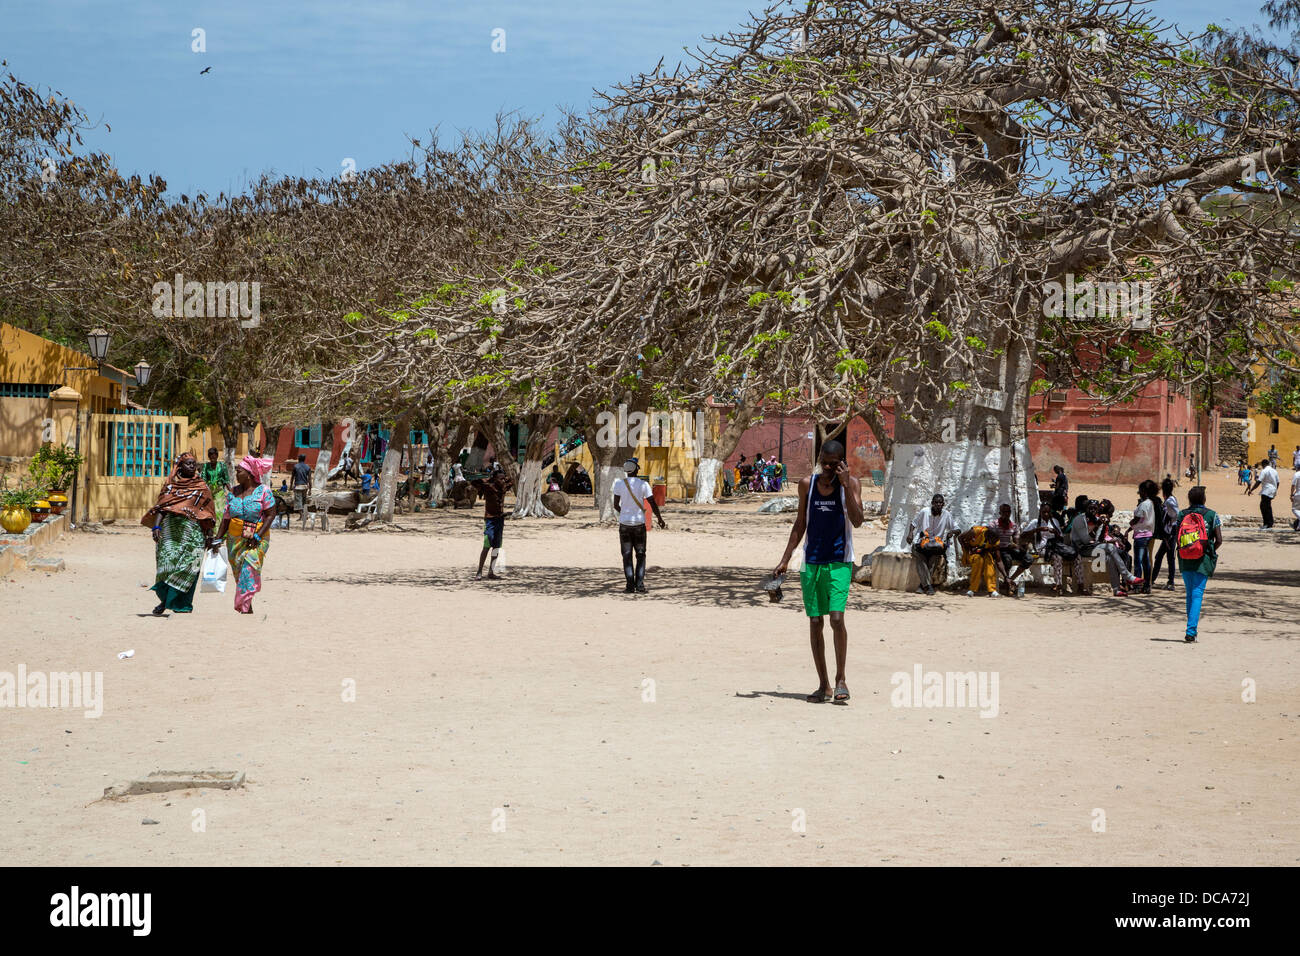 L'île de Gorée, au Sénégal. Un grand baobab fournit de l'ombre. Banque D'Images